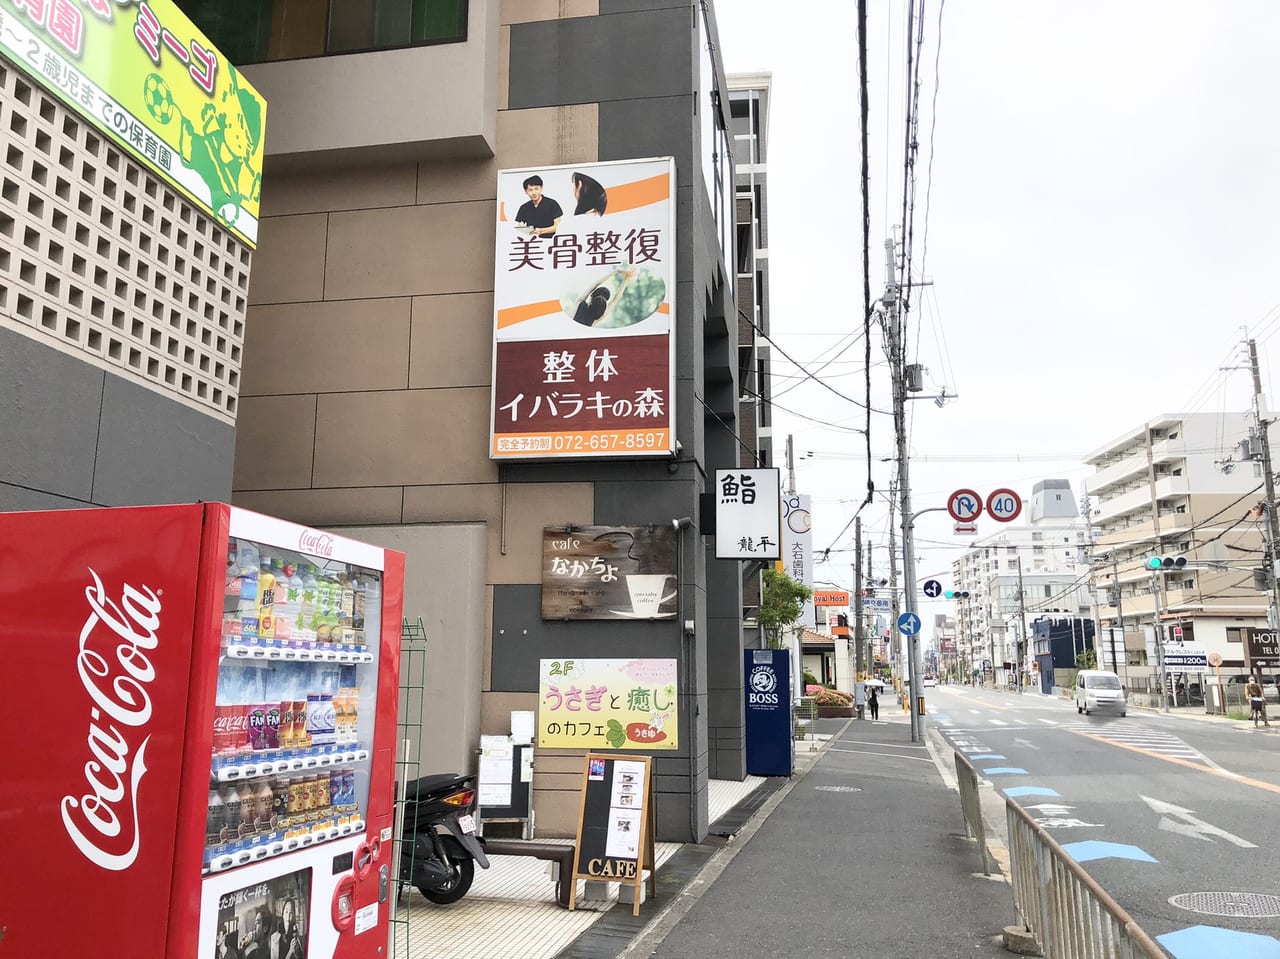 茨木市 うさぎと癒しのカフェ うさゆ が5月8日で閉店するようですーうさぎの里親を募集中 号外net 茨木